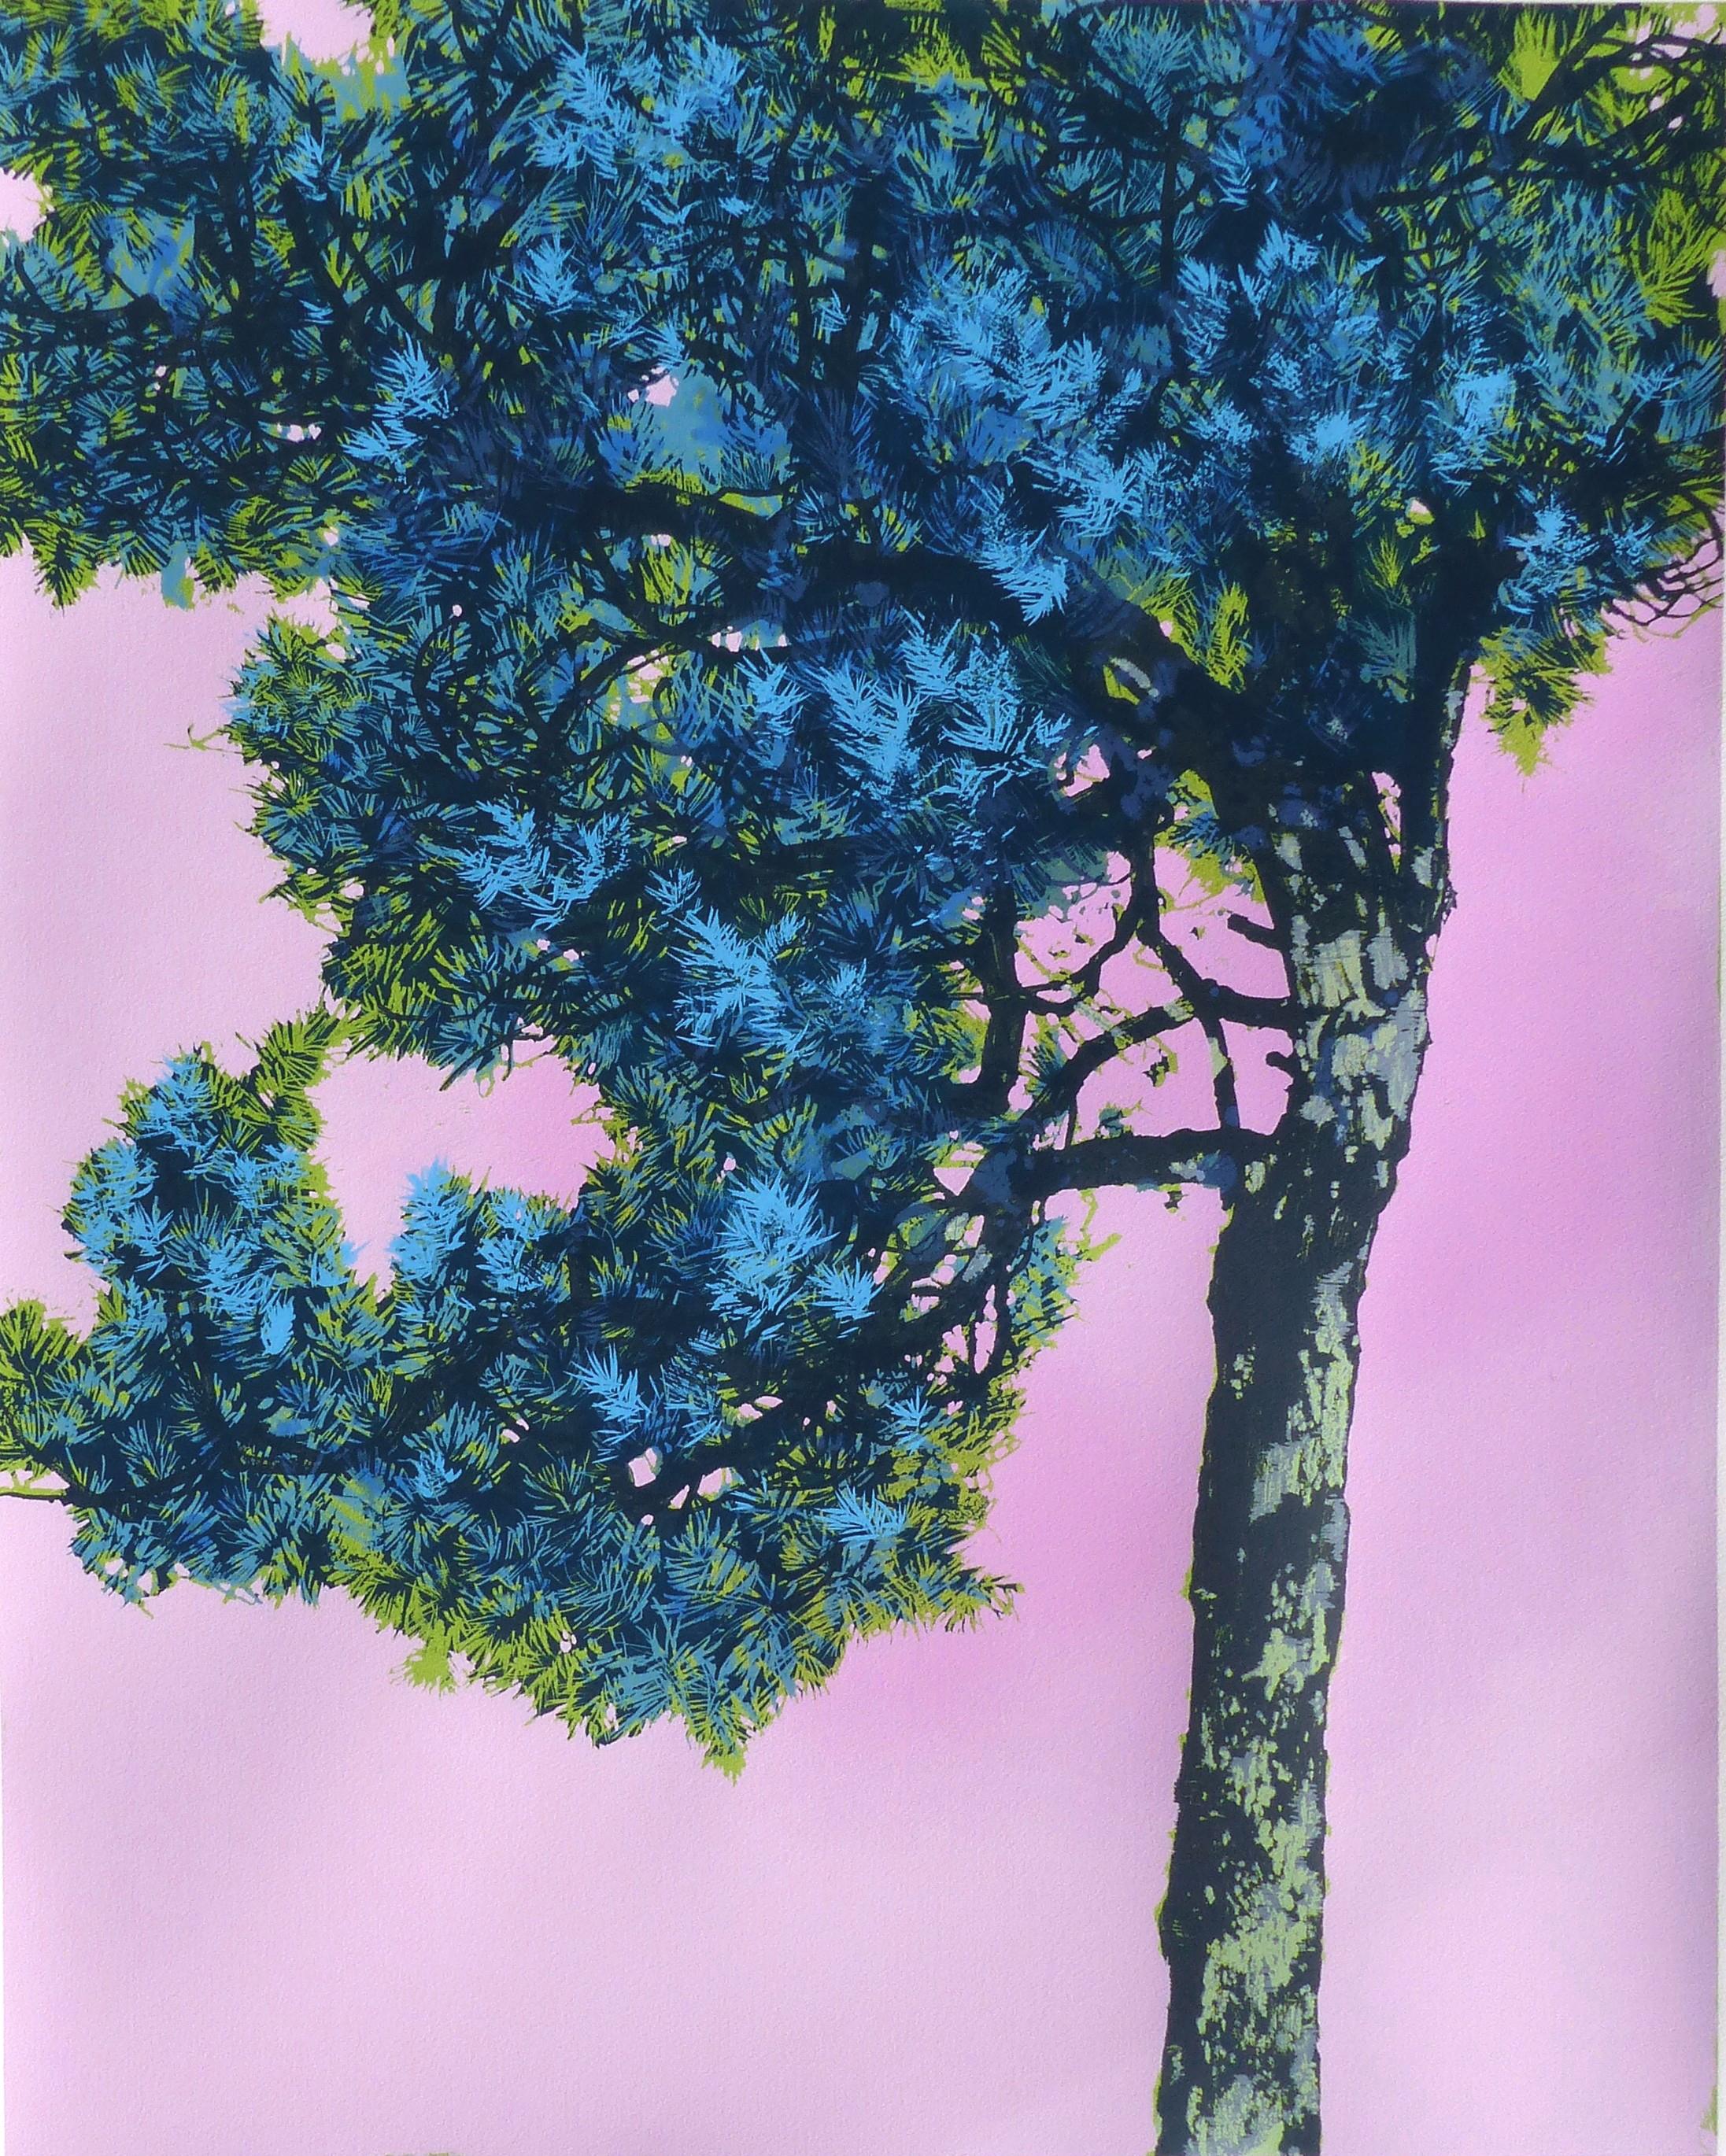 Henrik Simonsen  Landscape Print - “Pine” Limited Edition Color Print of Nature, A Fairytale Journey